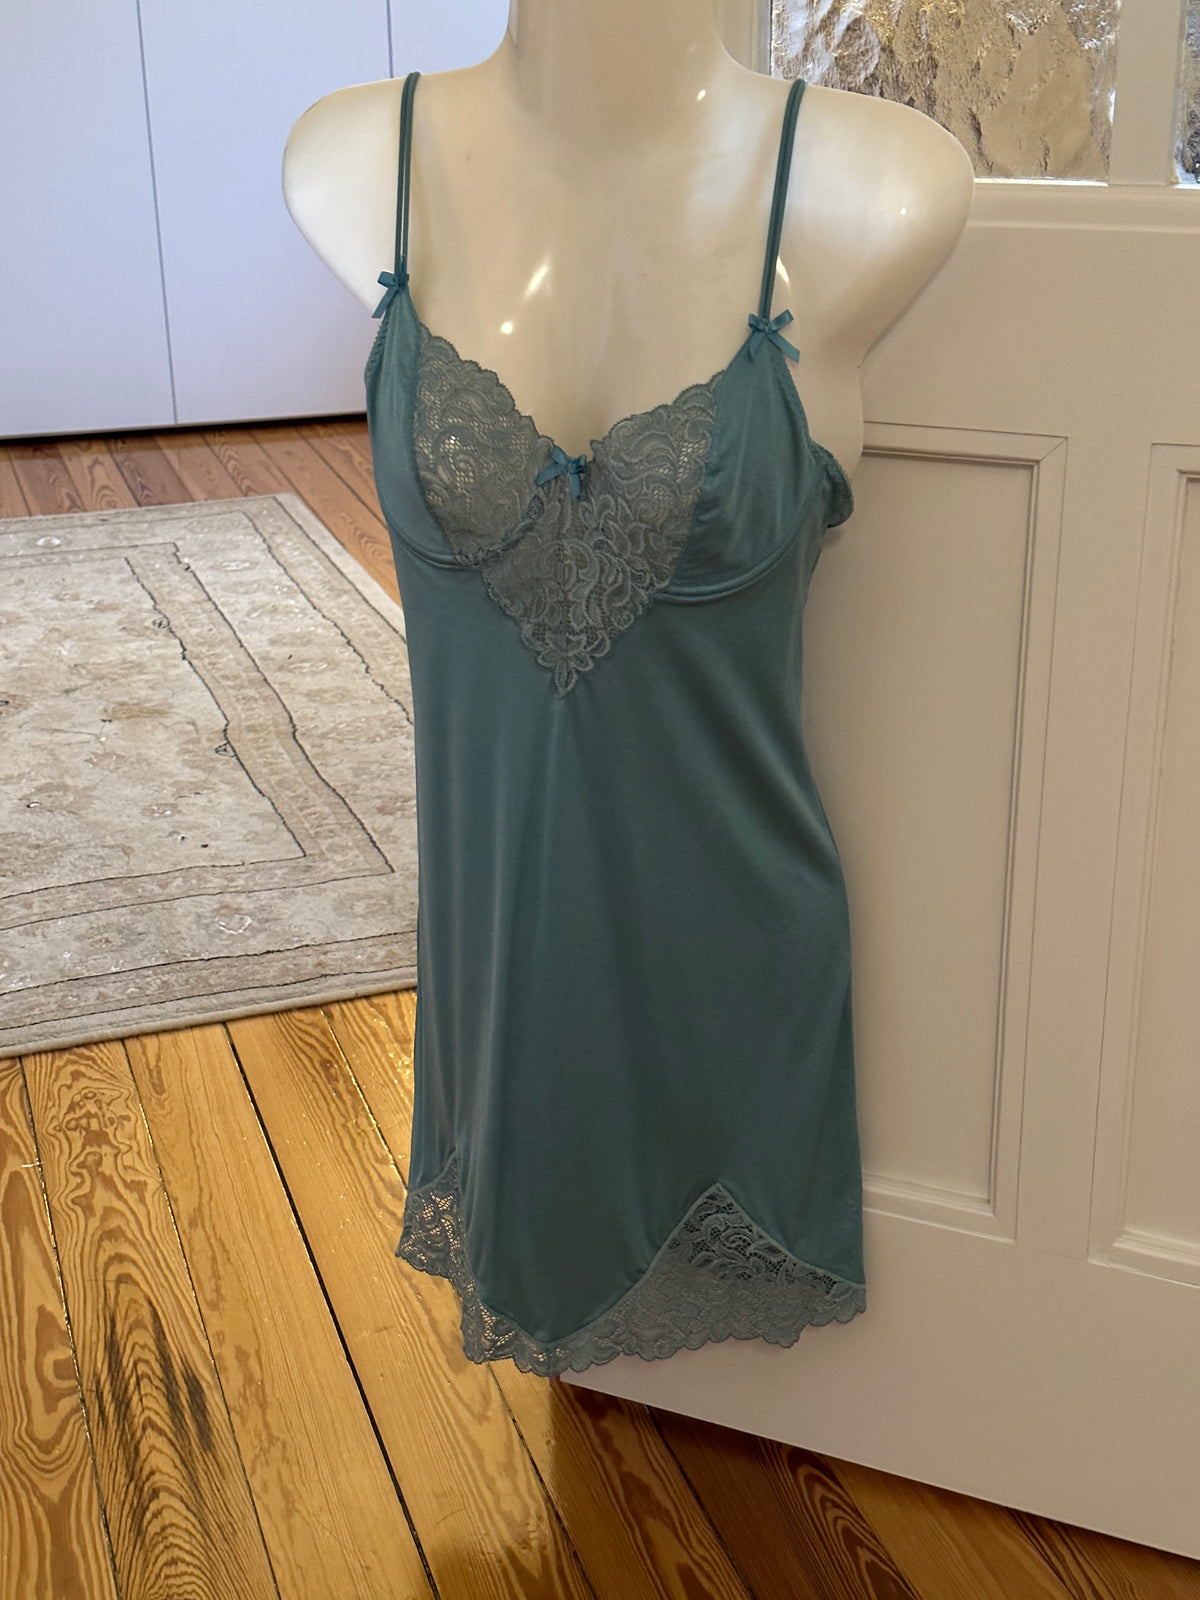 Lace Lingerie Dress (xs)